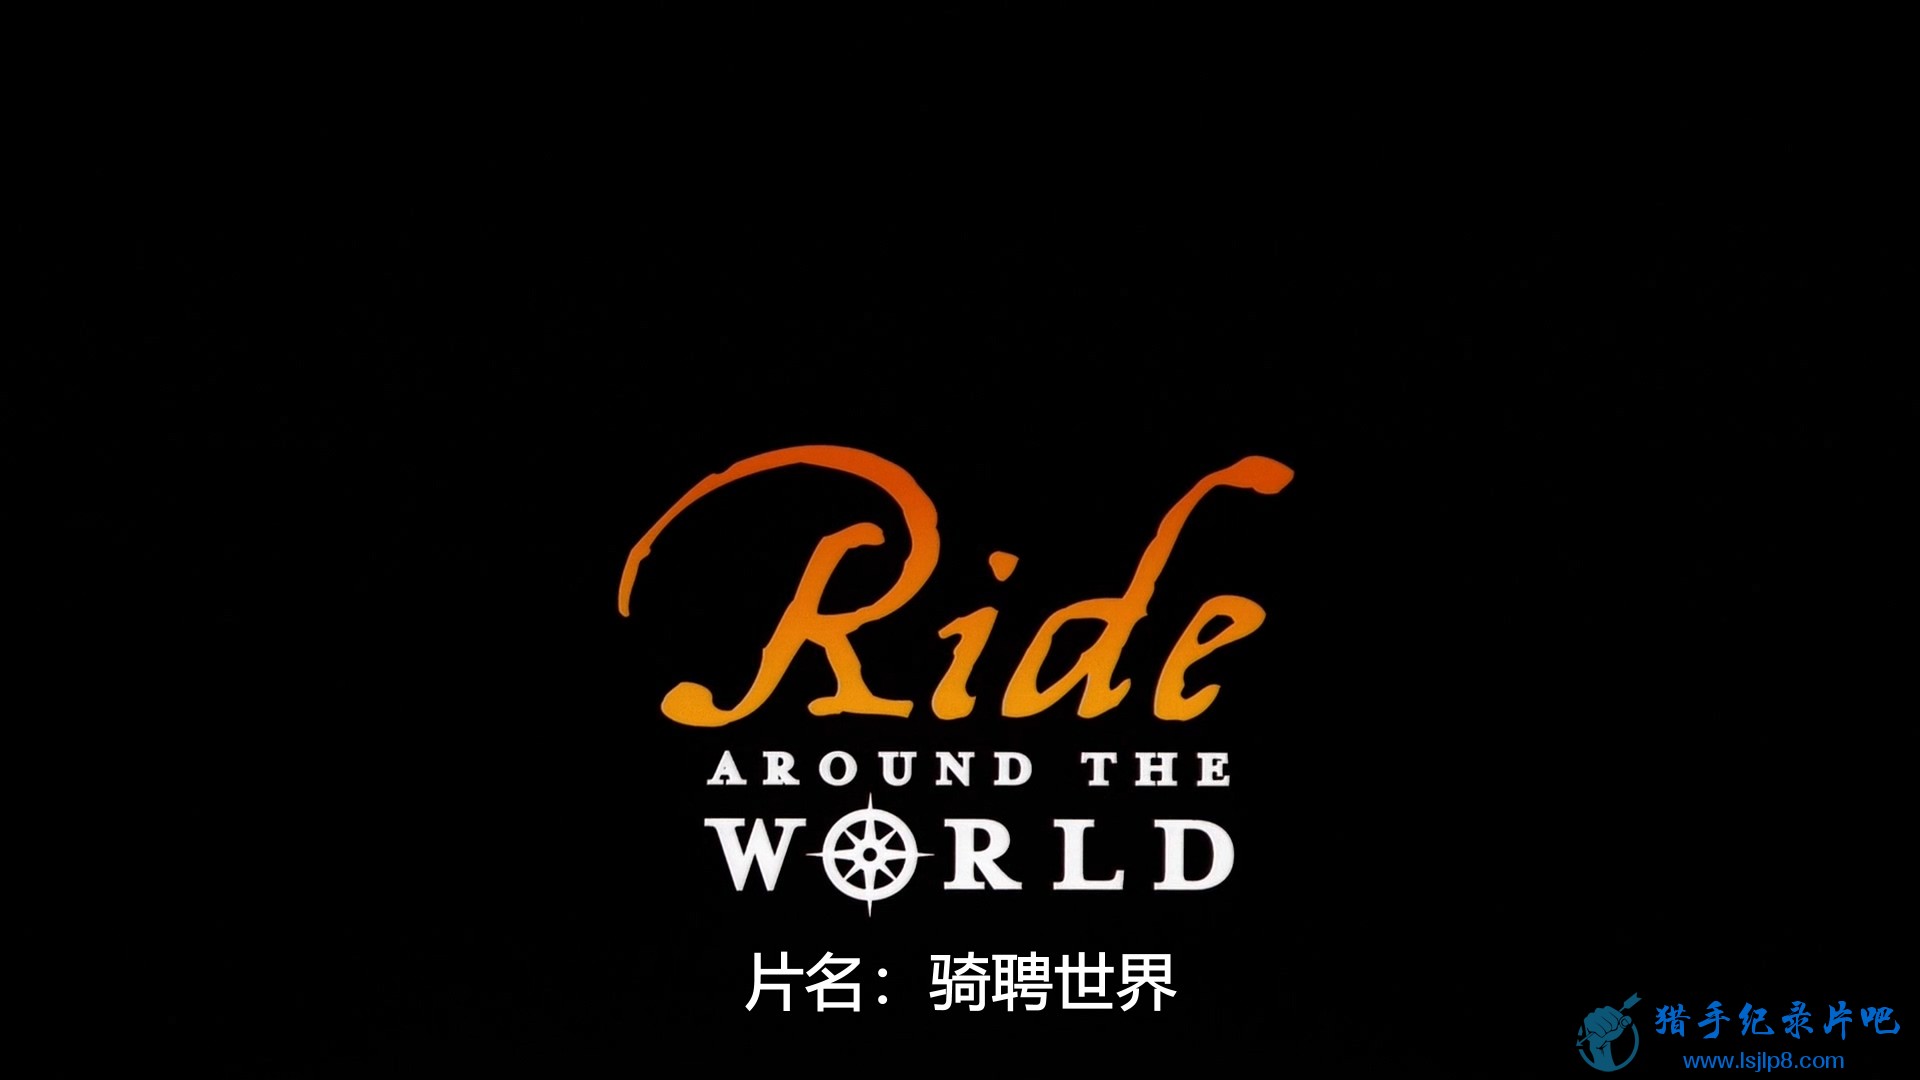 IMAX.Ride.Around.the.World.2006.1080p.BluRay.DTS.x264-HDC.mkv_20200615_095159.808.jpg